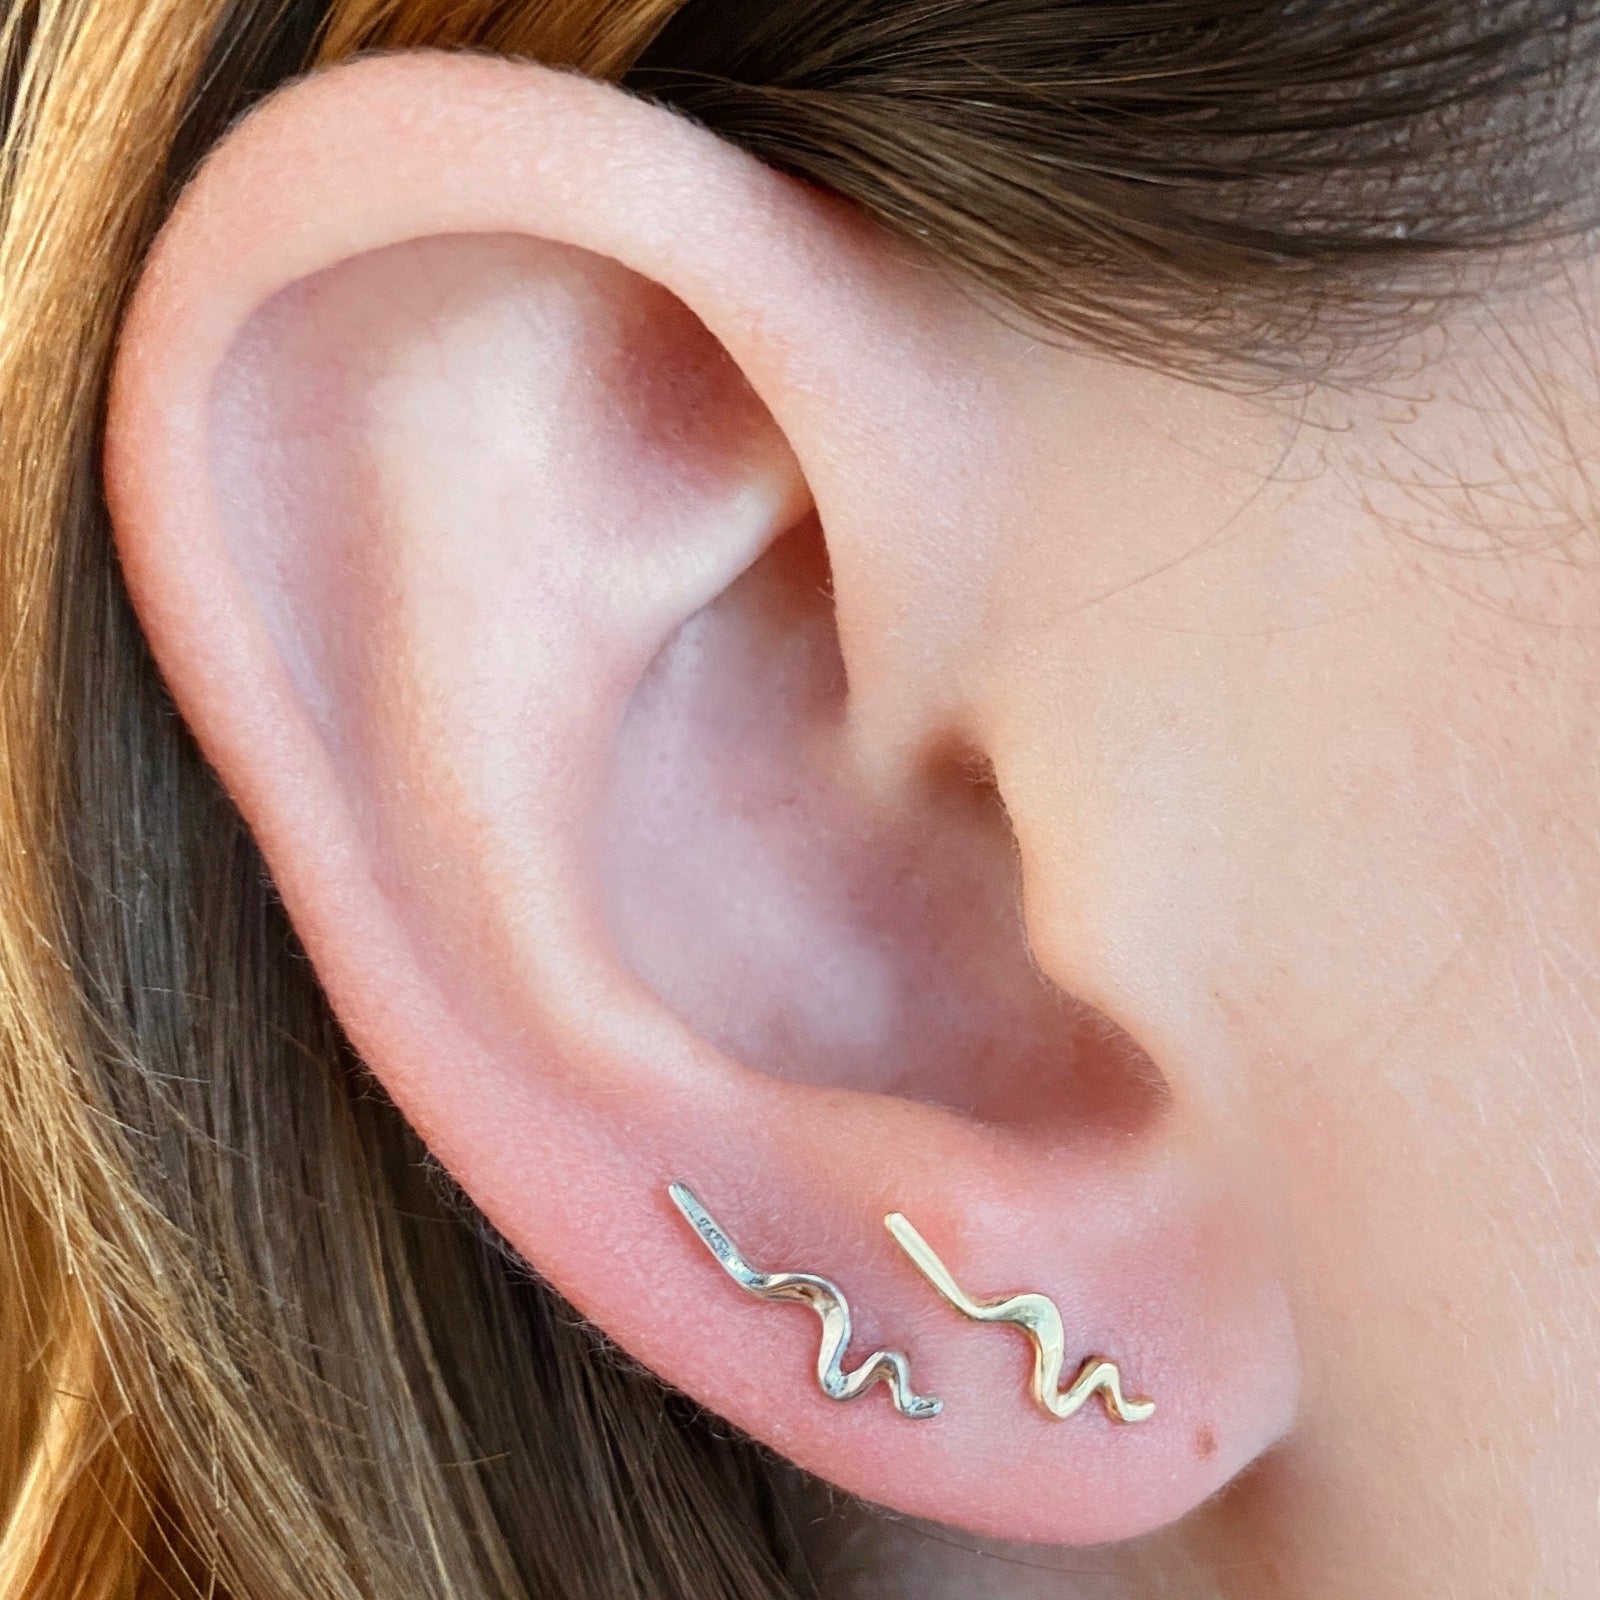 Plain Small Ripple Climber Earrings styled on a ear 